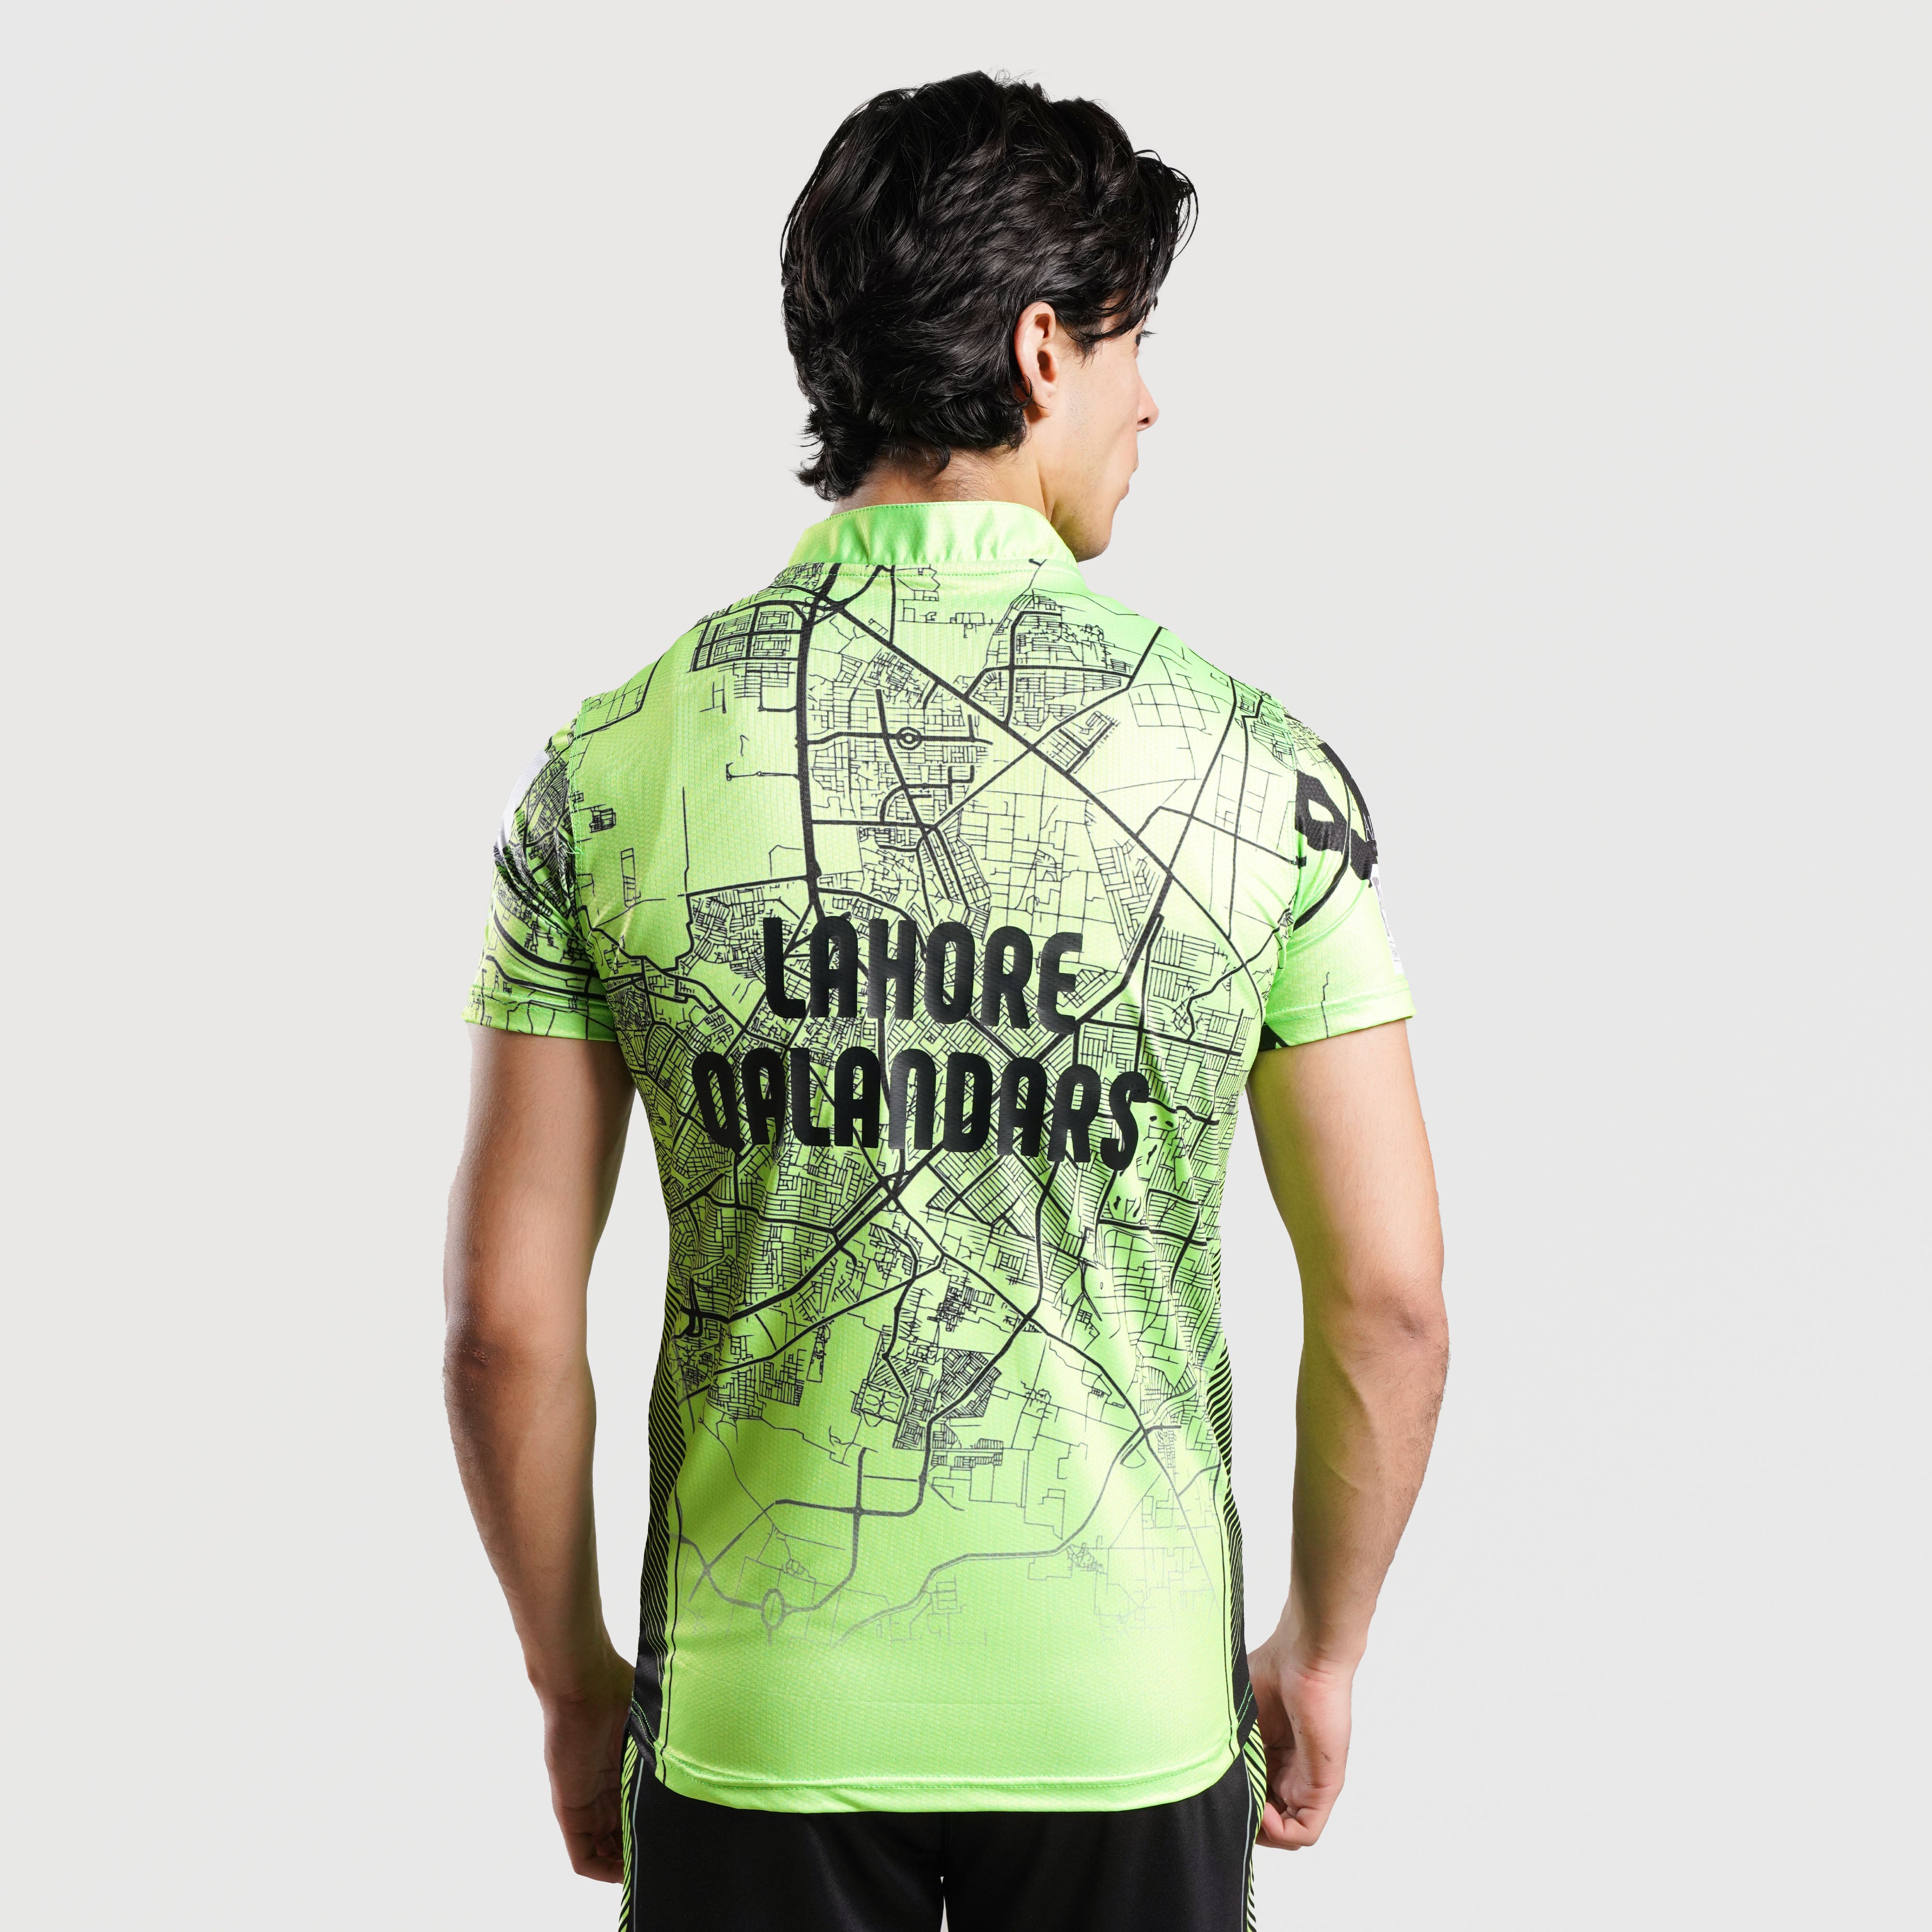 Lahore Qalandars T-Shirt (Home Kit)